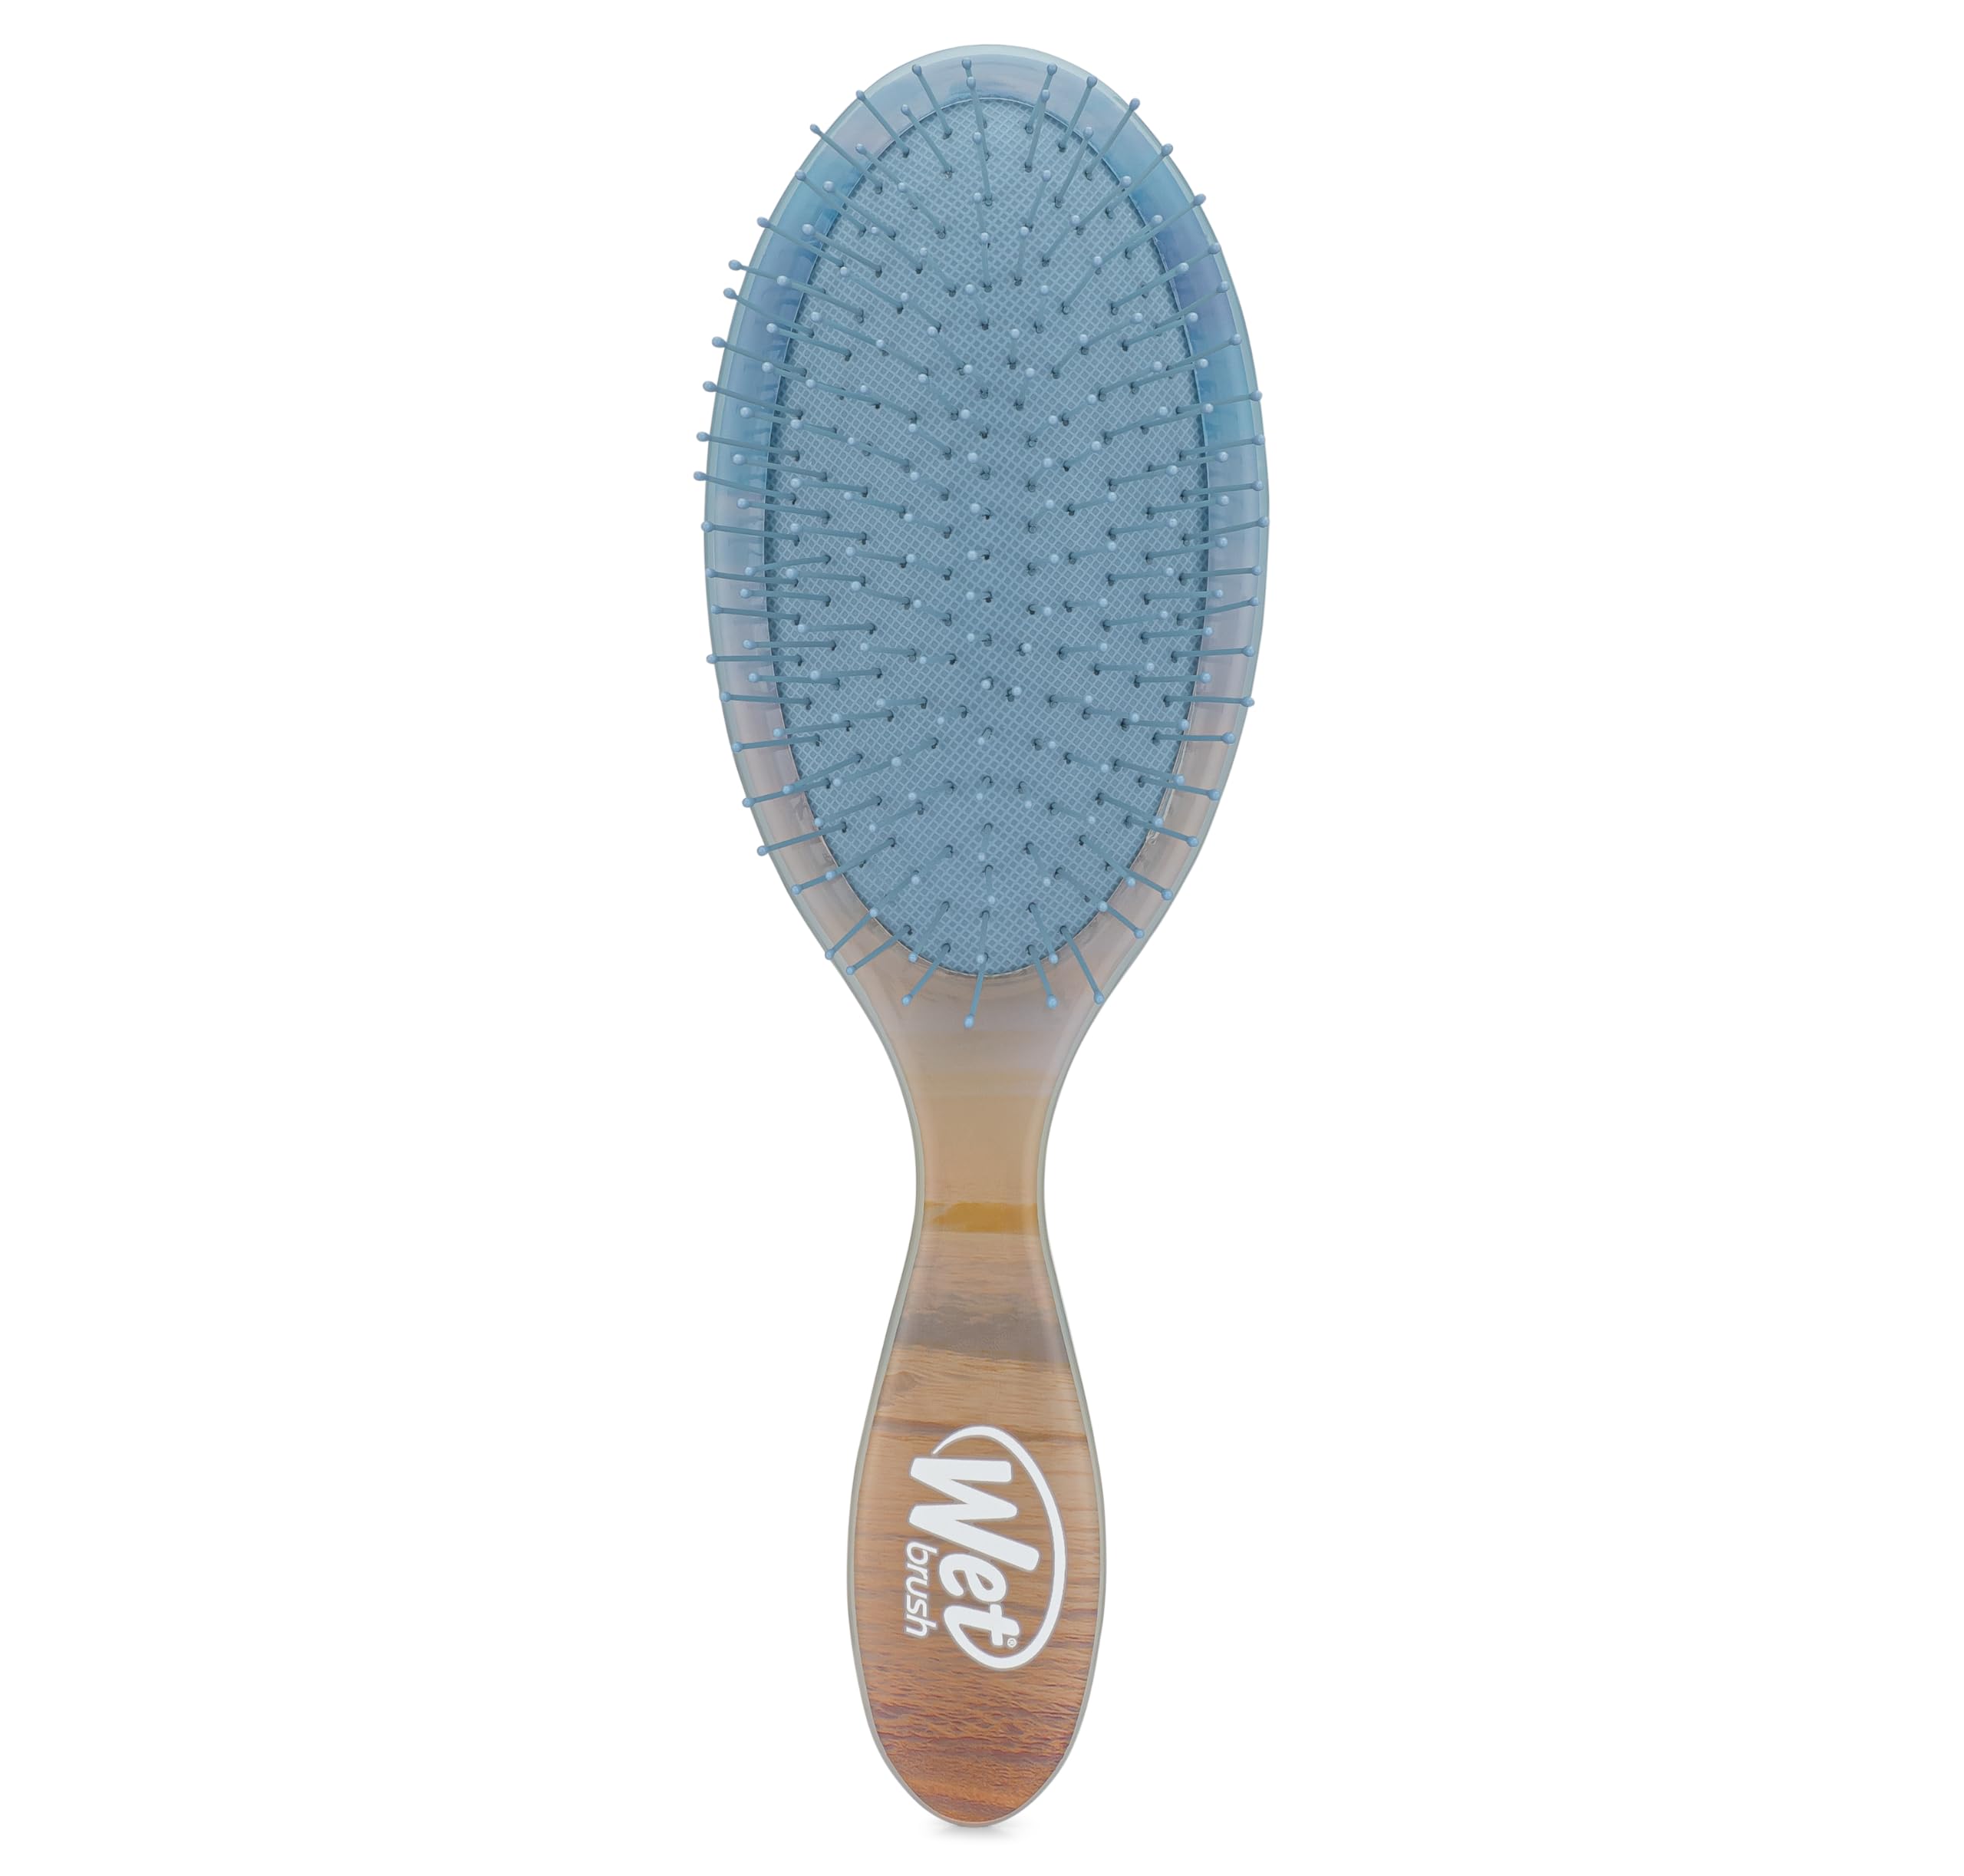 Wet Brush Original Detangler Hair Brush, Blue (Desert Afterglow) - Ultra-Soft IntelliFlex Bristles - Detangling Brush Glides Through Tangles For All Hair Types (Wet Dry & Damaged) - Women & Men